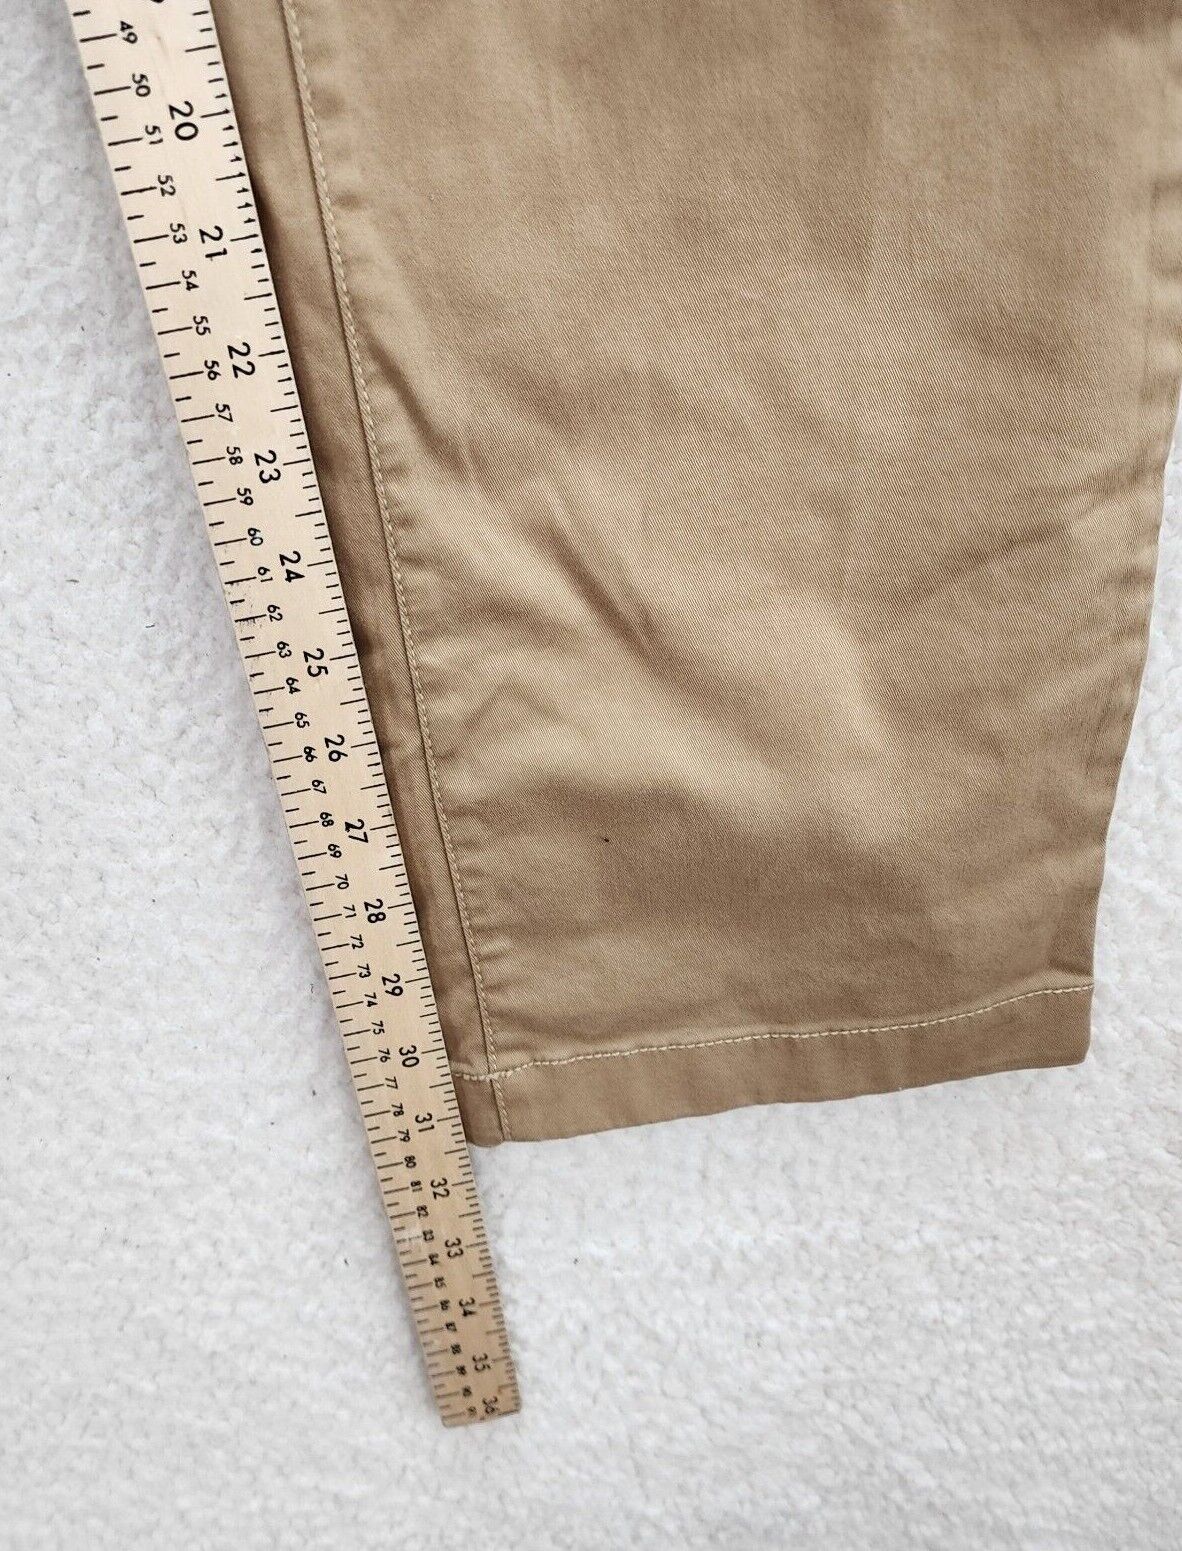 14TH & UNION Soft Denim Pants Men's 38W X 32L Tan Slim Fit Straight Cut